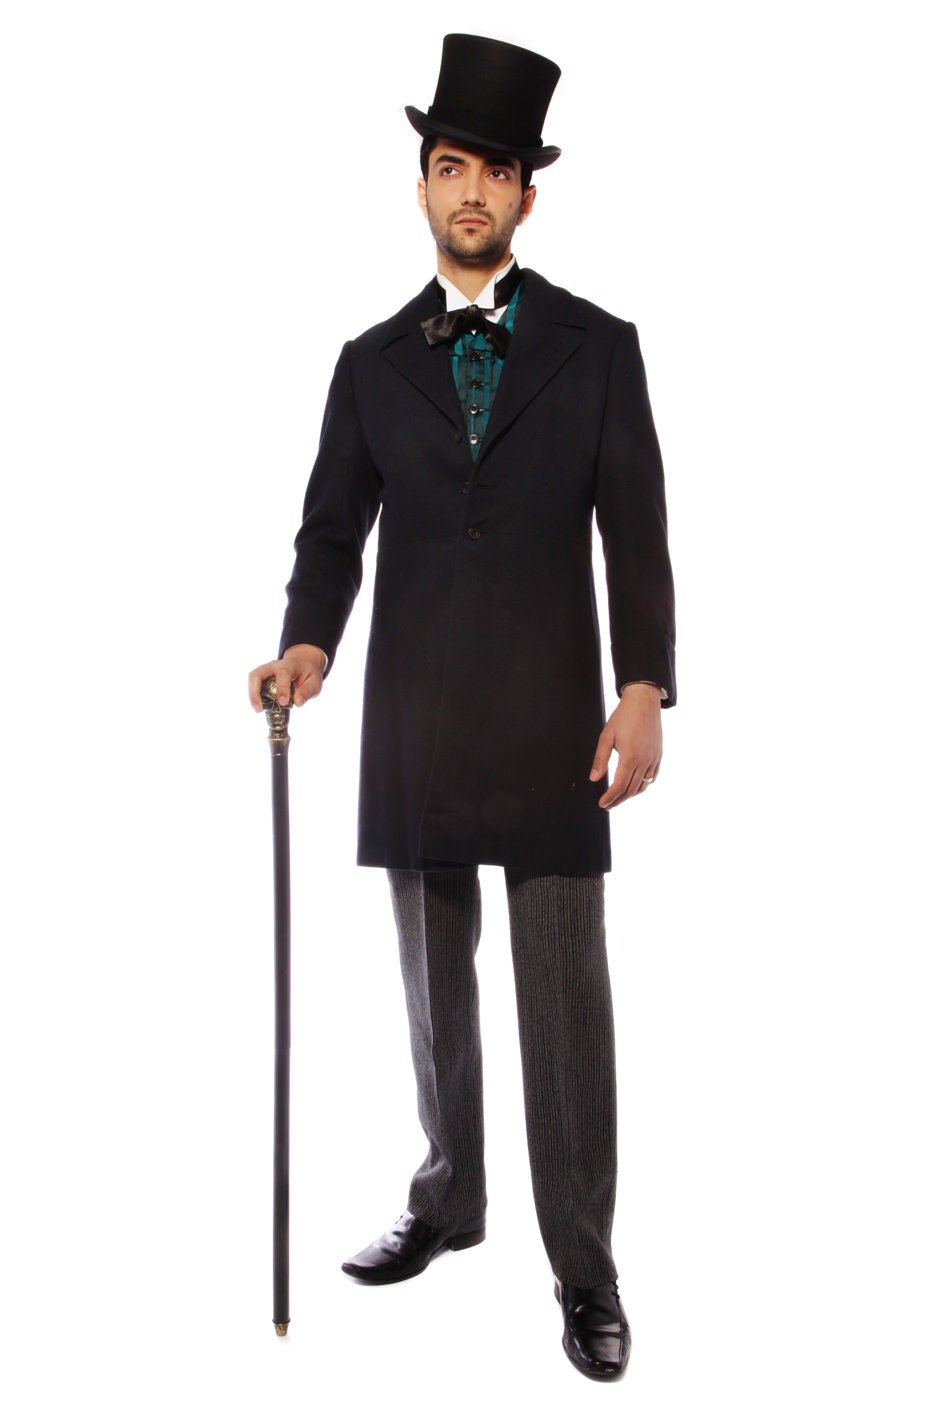 Victorian - Edwardian - Men Archives - Costume Boutique